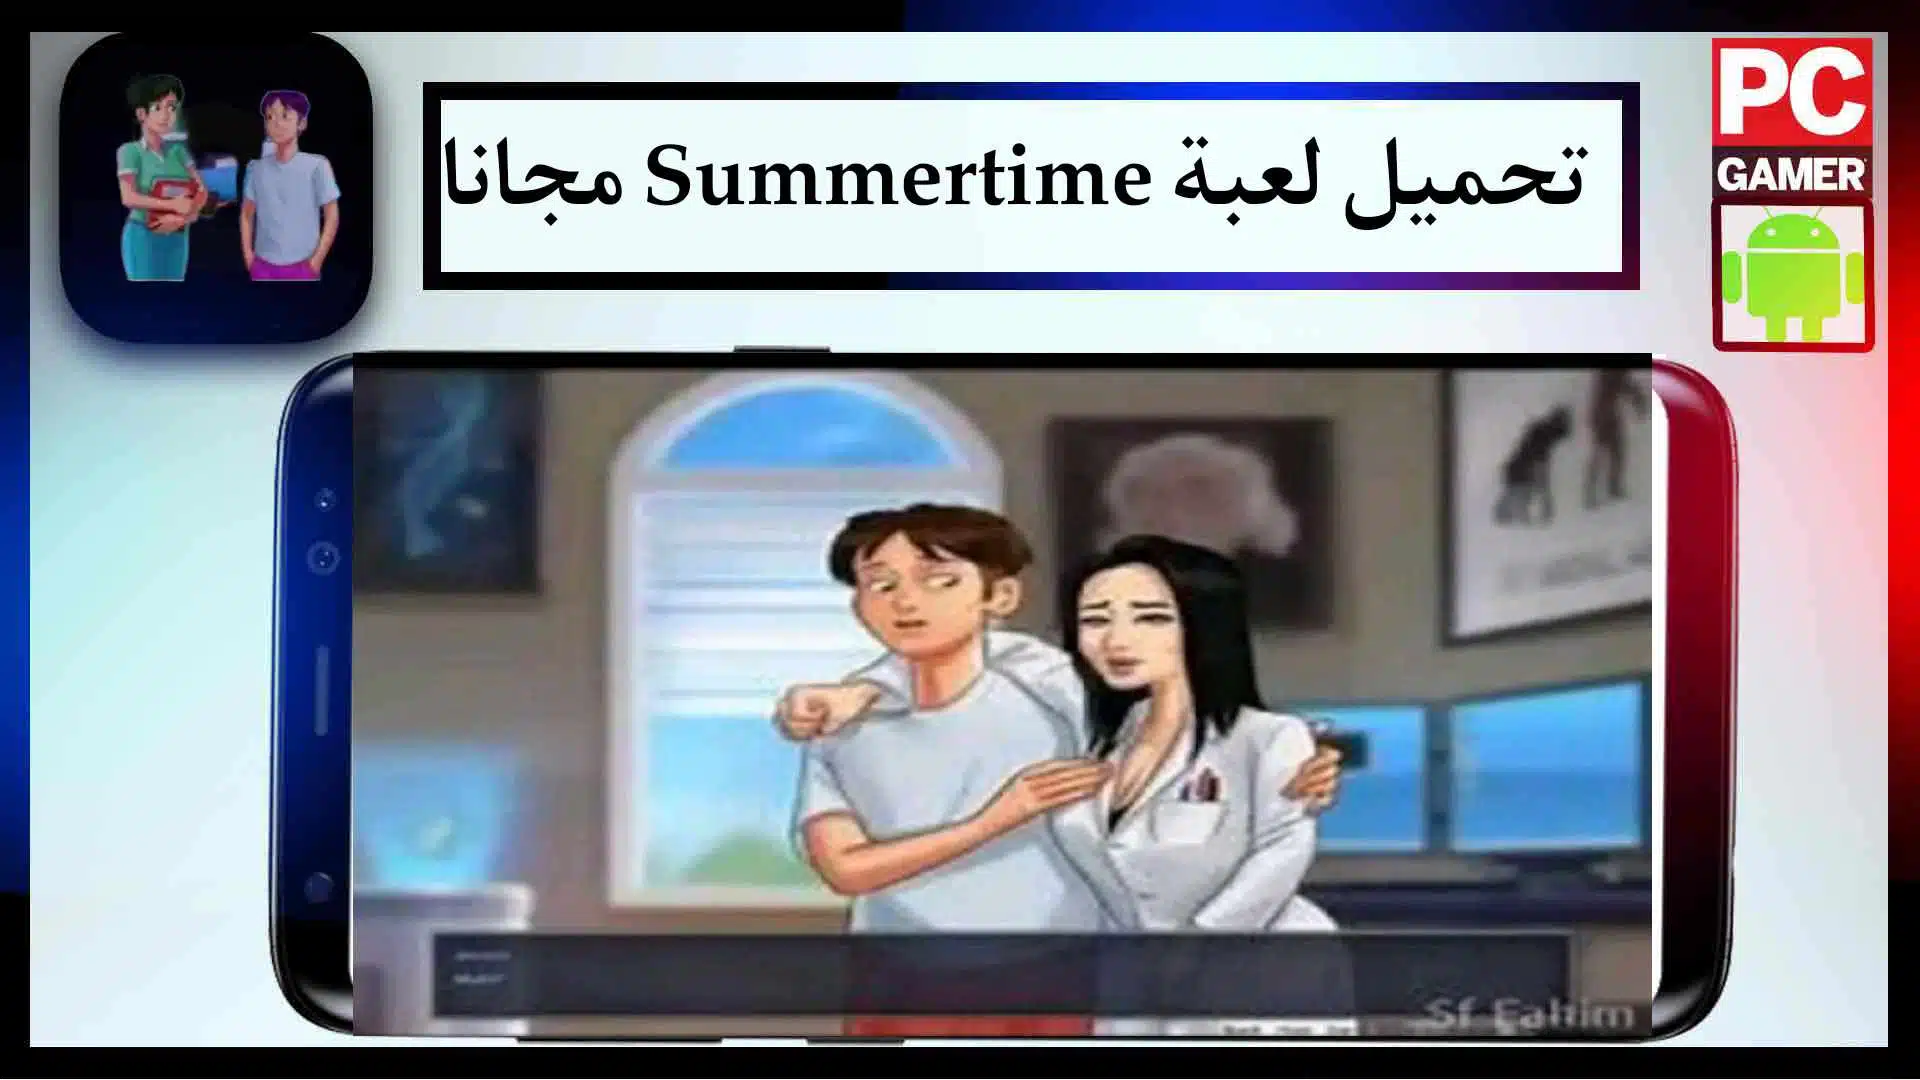 تحميل لعبة summertime saga بالعربي مهكرة اخر اصدار من ميديا فاير